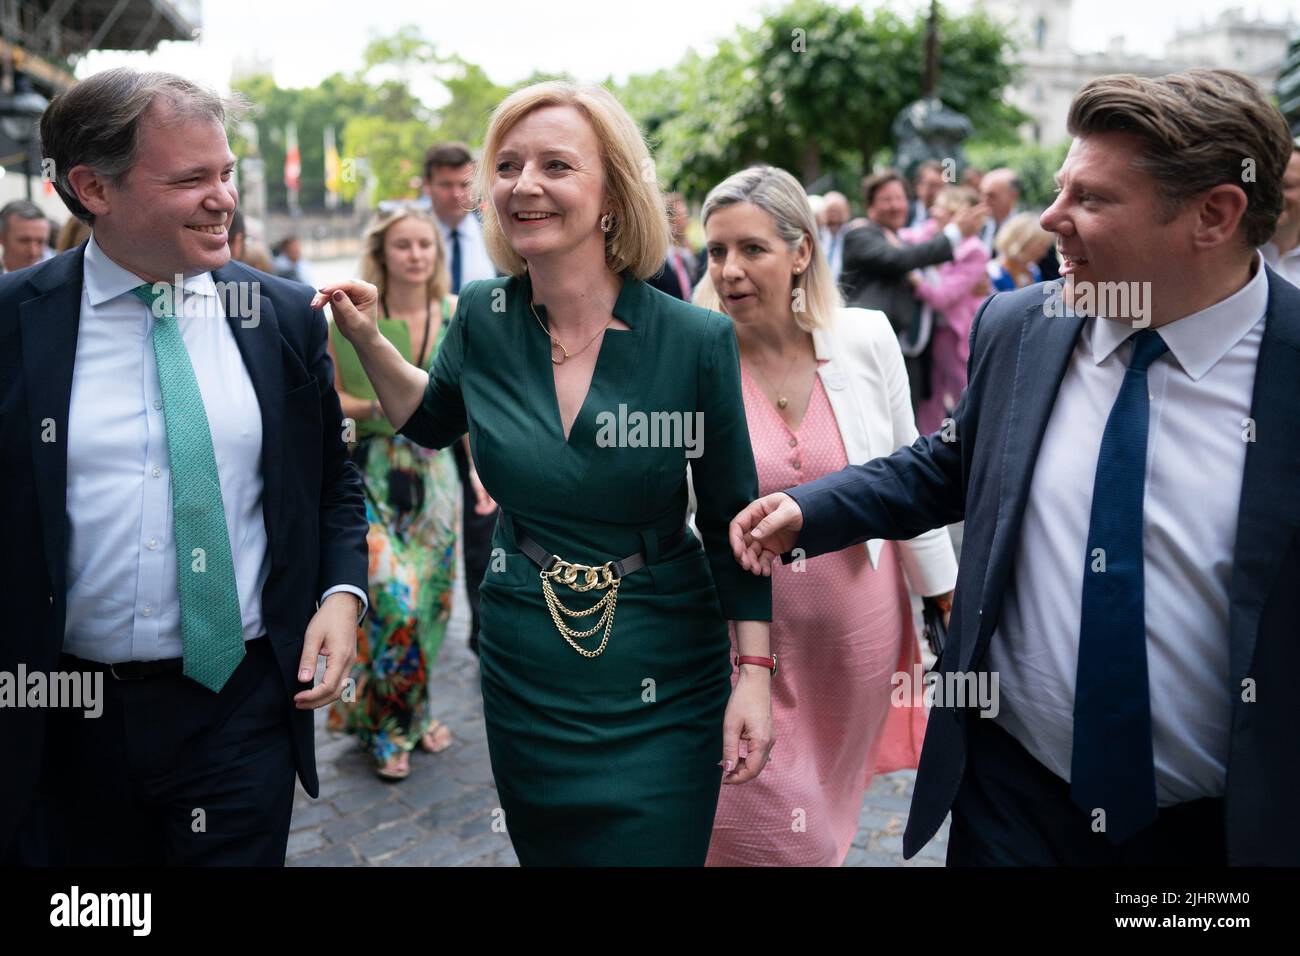 Die Außenministerin und Tory-Kandidatin Liz Truss feiert mit ihren Unterstützern im Parlament, nachdem sie es gemeinsam mit Rishsi Sunak zu den letzten beiden Kandidaten für den Premierminister London gebracht hat. Bilddatum: Mittwoch, 20. Juli 2022. Stockfoto